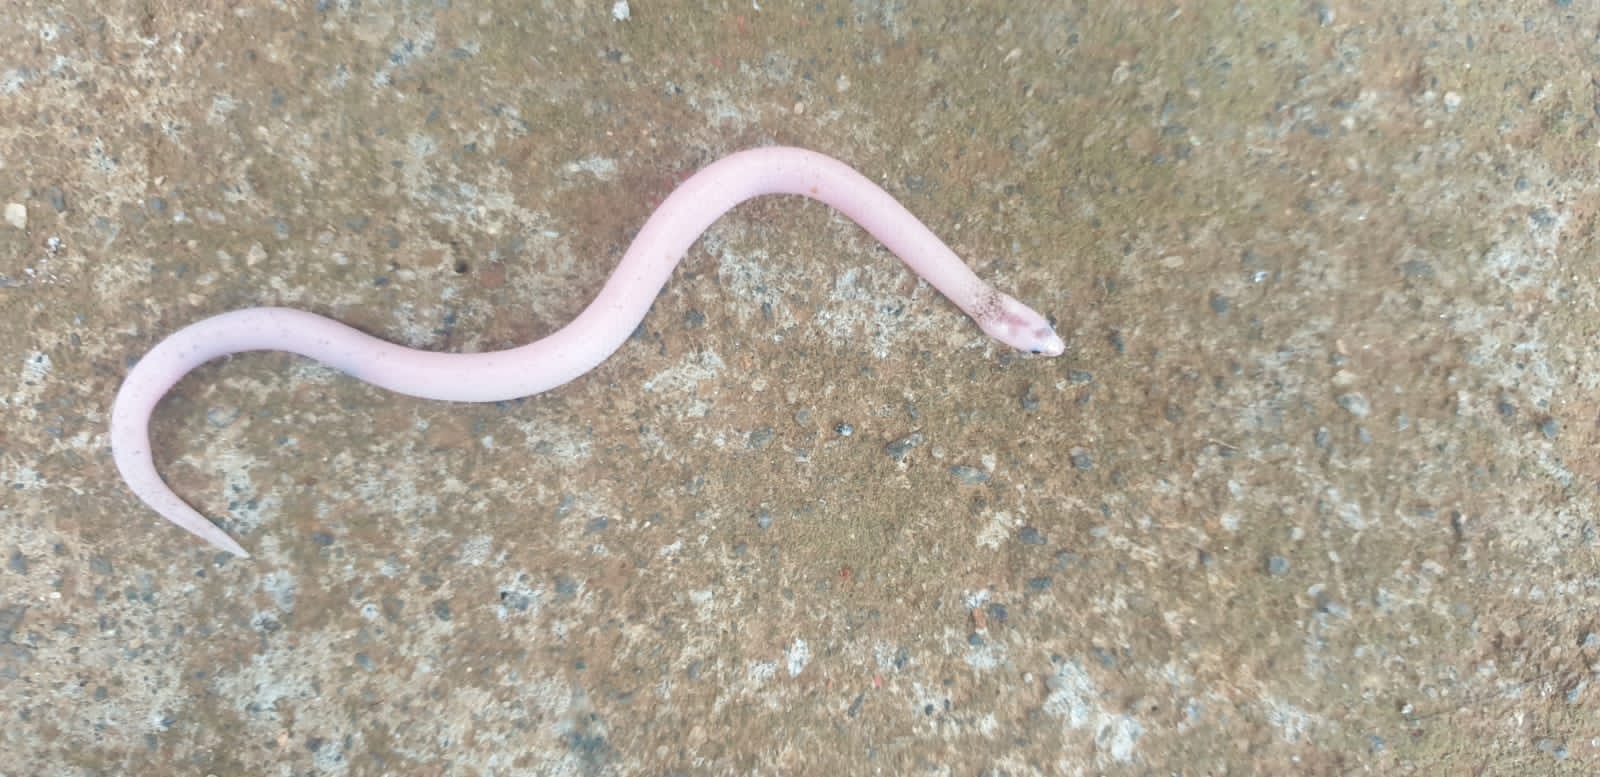 Albino Striped Narrow Headed Snake